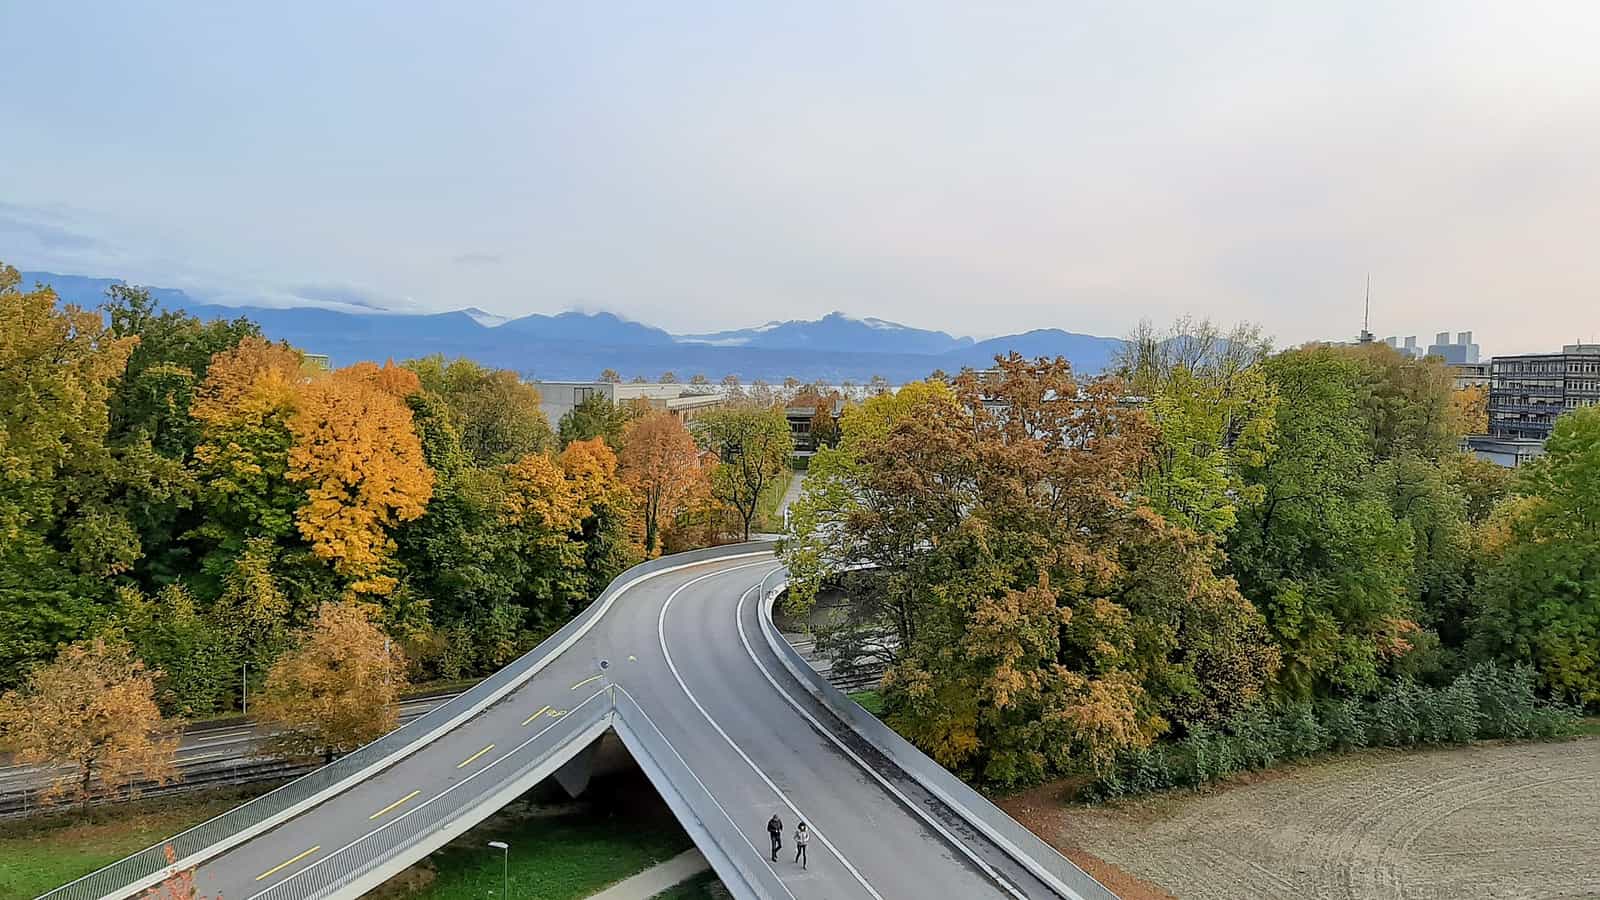 Vue du bâtiment Vortex vers les Alpes. Couleurs d'automne et route divisée.